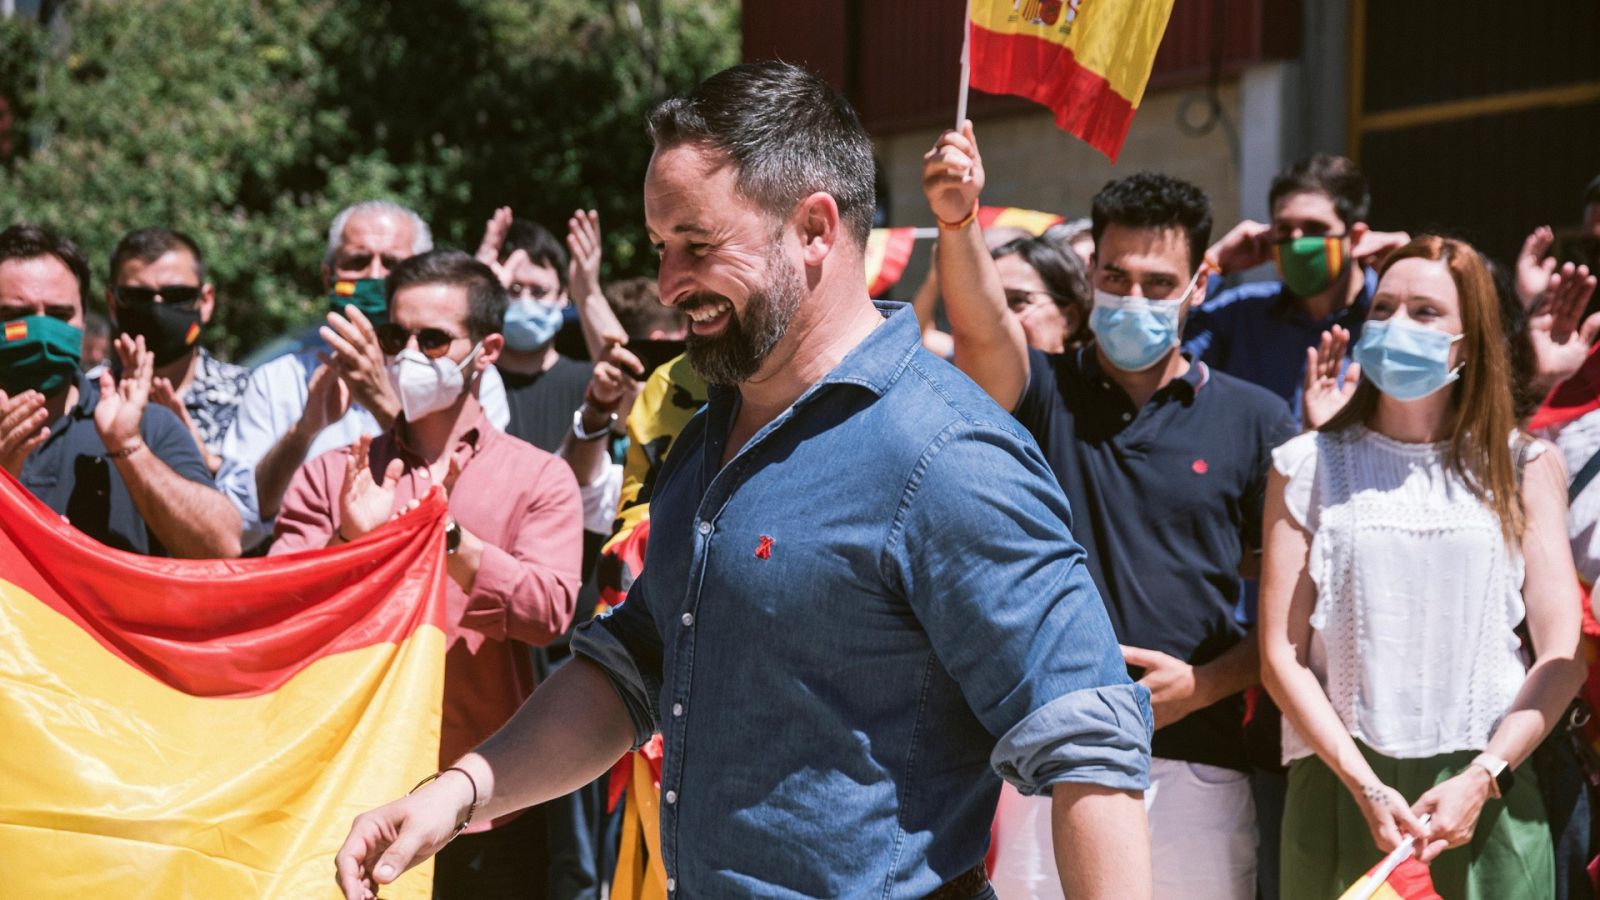 Elecciones vascas | Abascal dice que liberará a los vascos del nacionalismo - RTVE.es